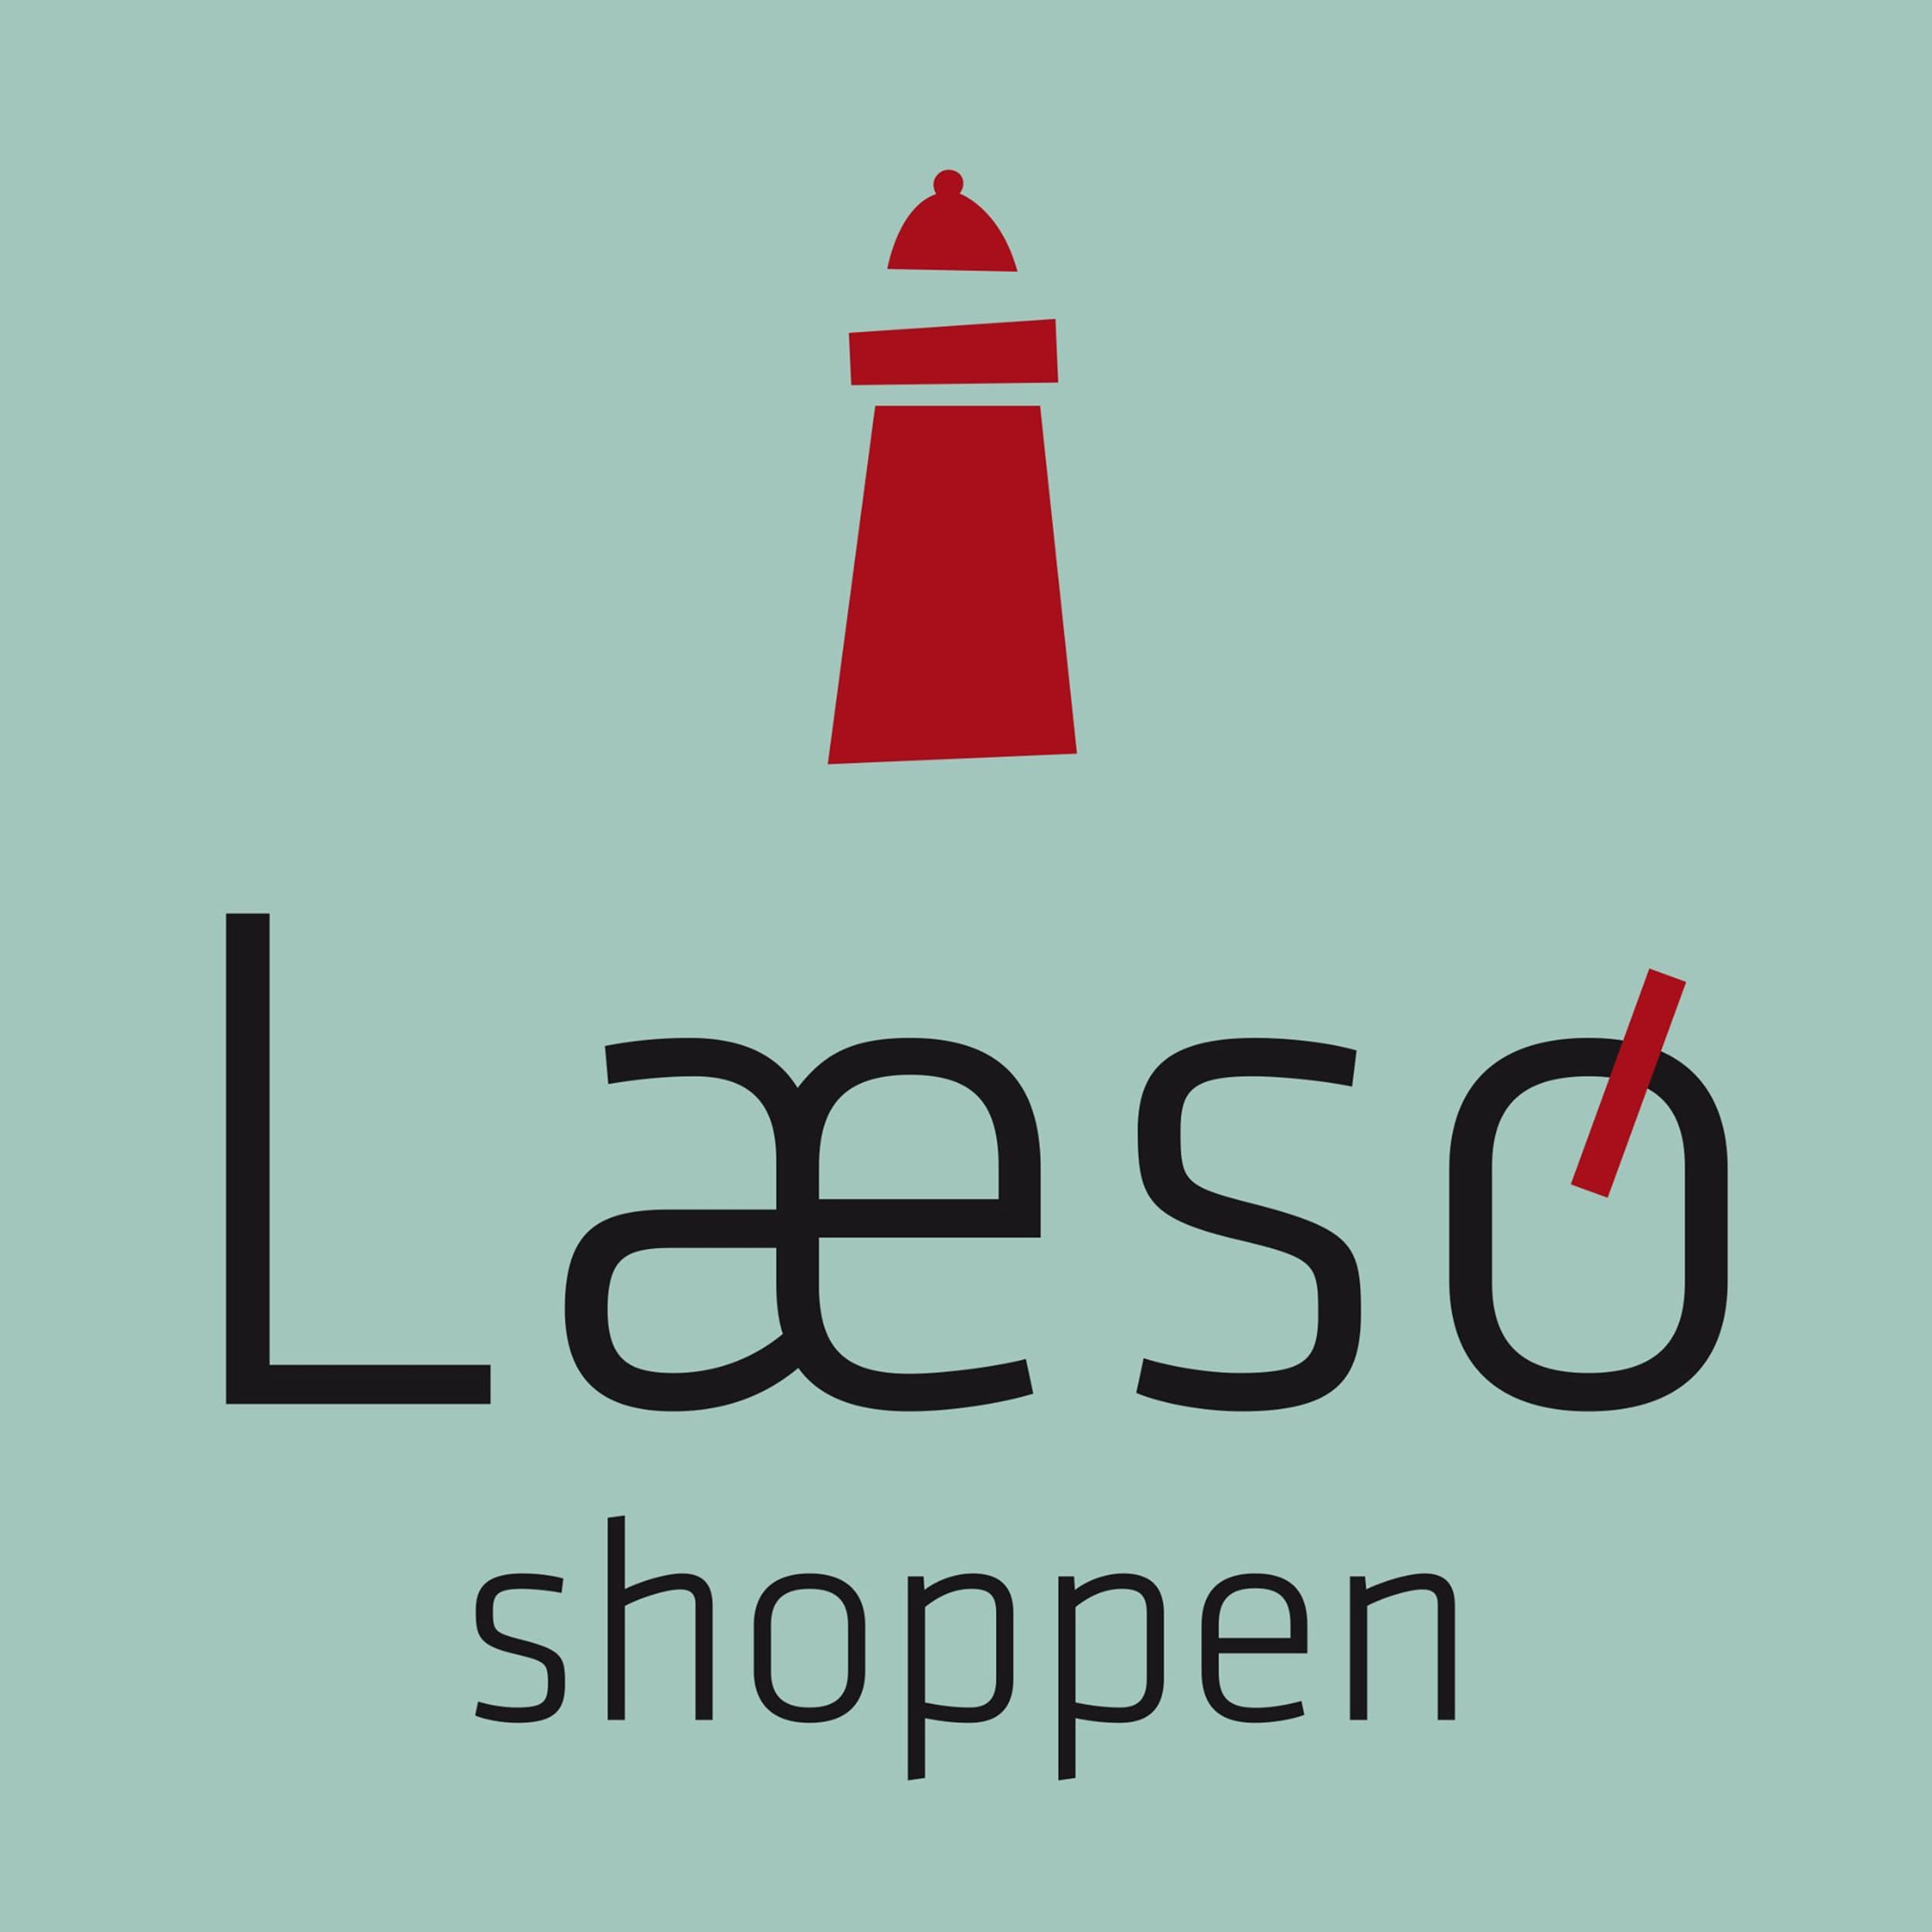 laesoe-shoppen-logo.jpeg